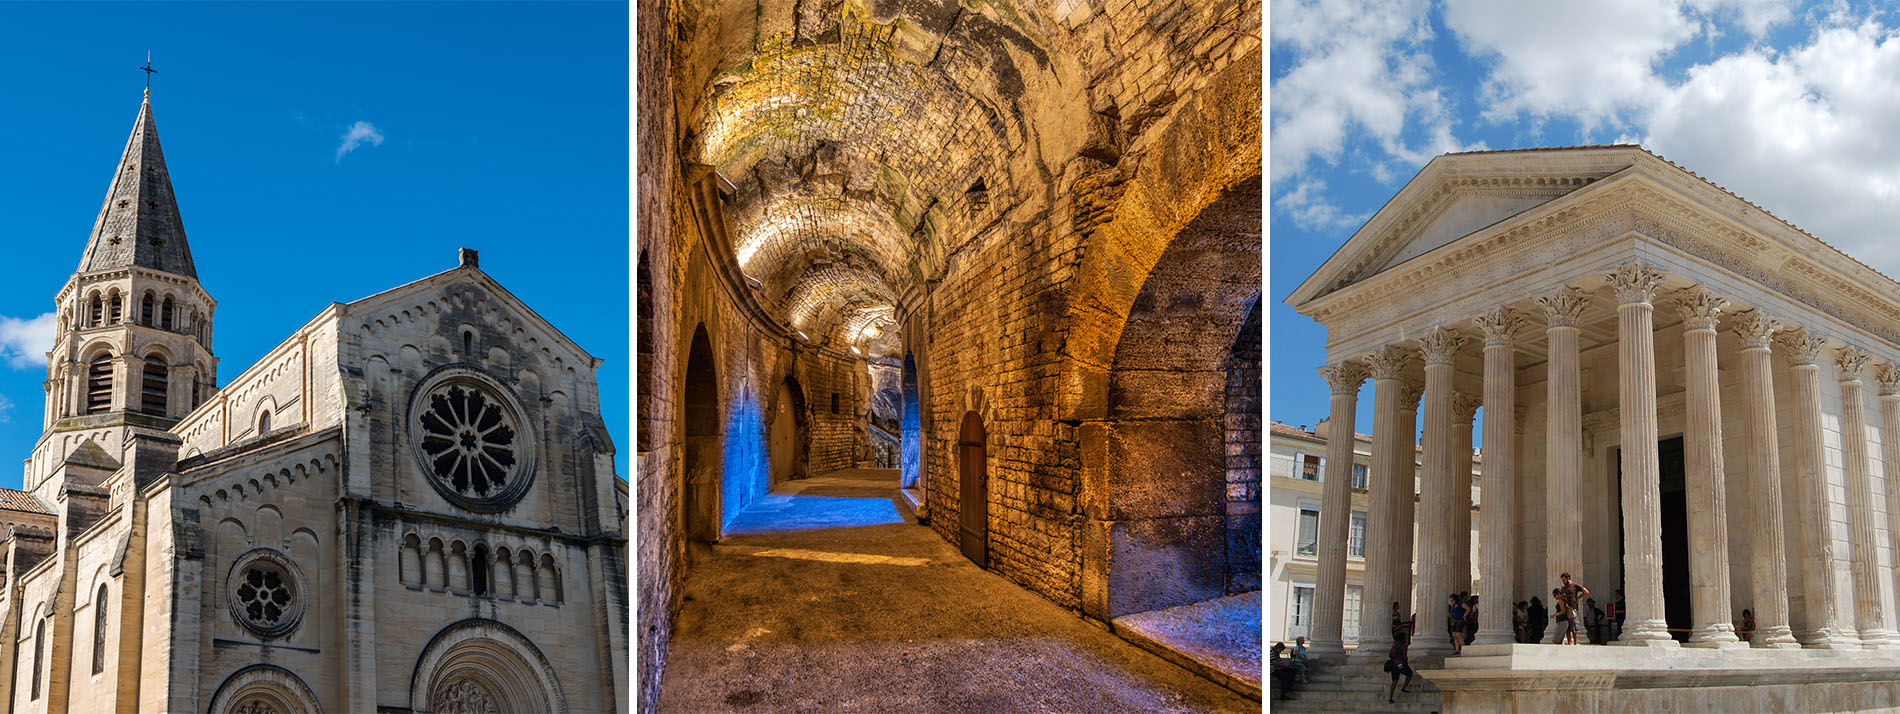 Visiter Nîmes quand il pleut : les incontournables